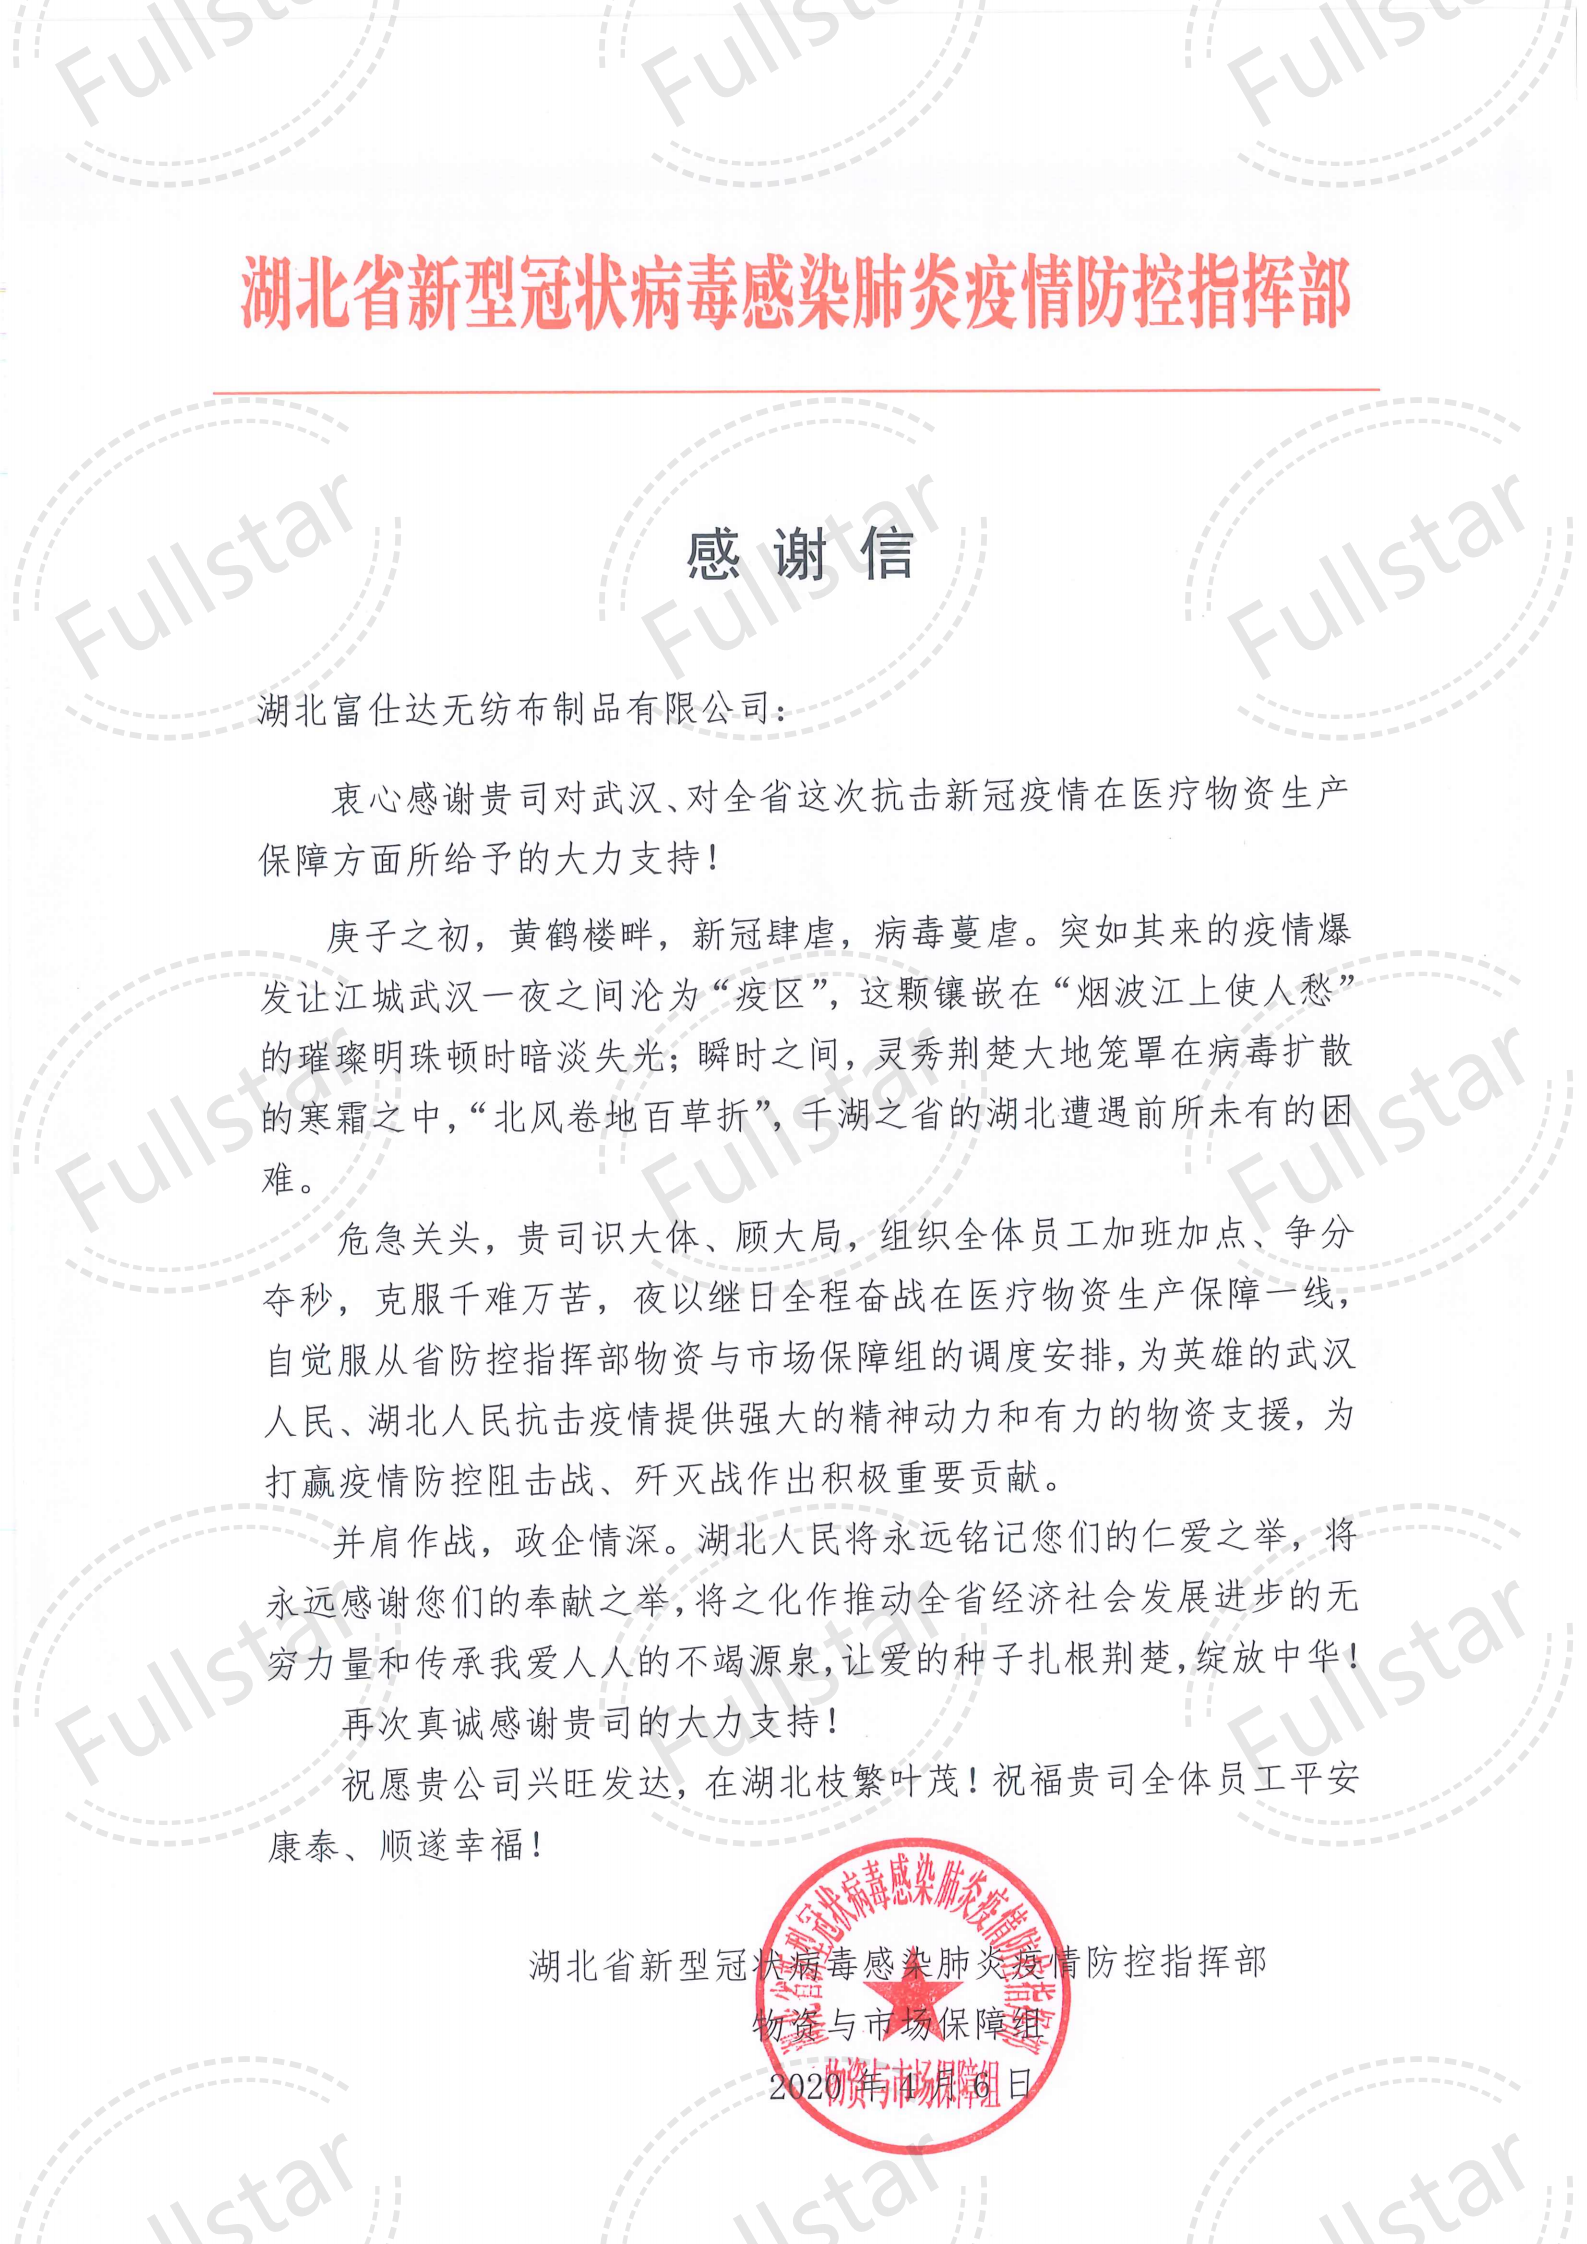 (Компания по производству нетканых материалов Hubei Fushida) Благодарственное письмо от Главного управления провинции Хубэй_00 (1) .png